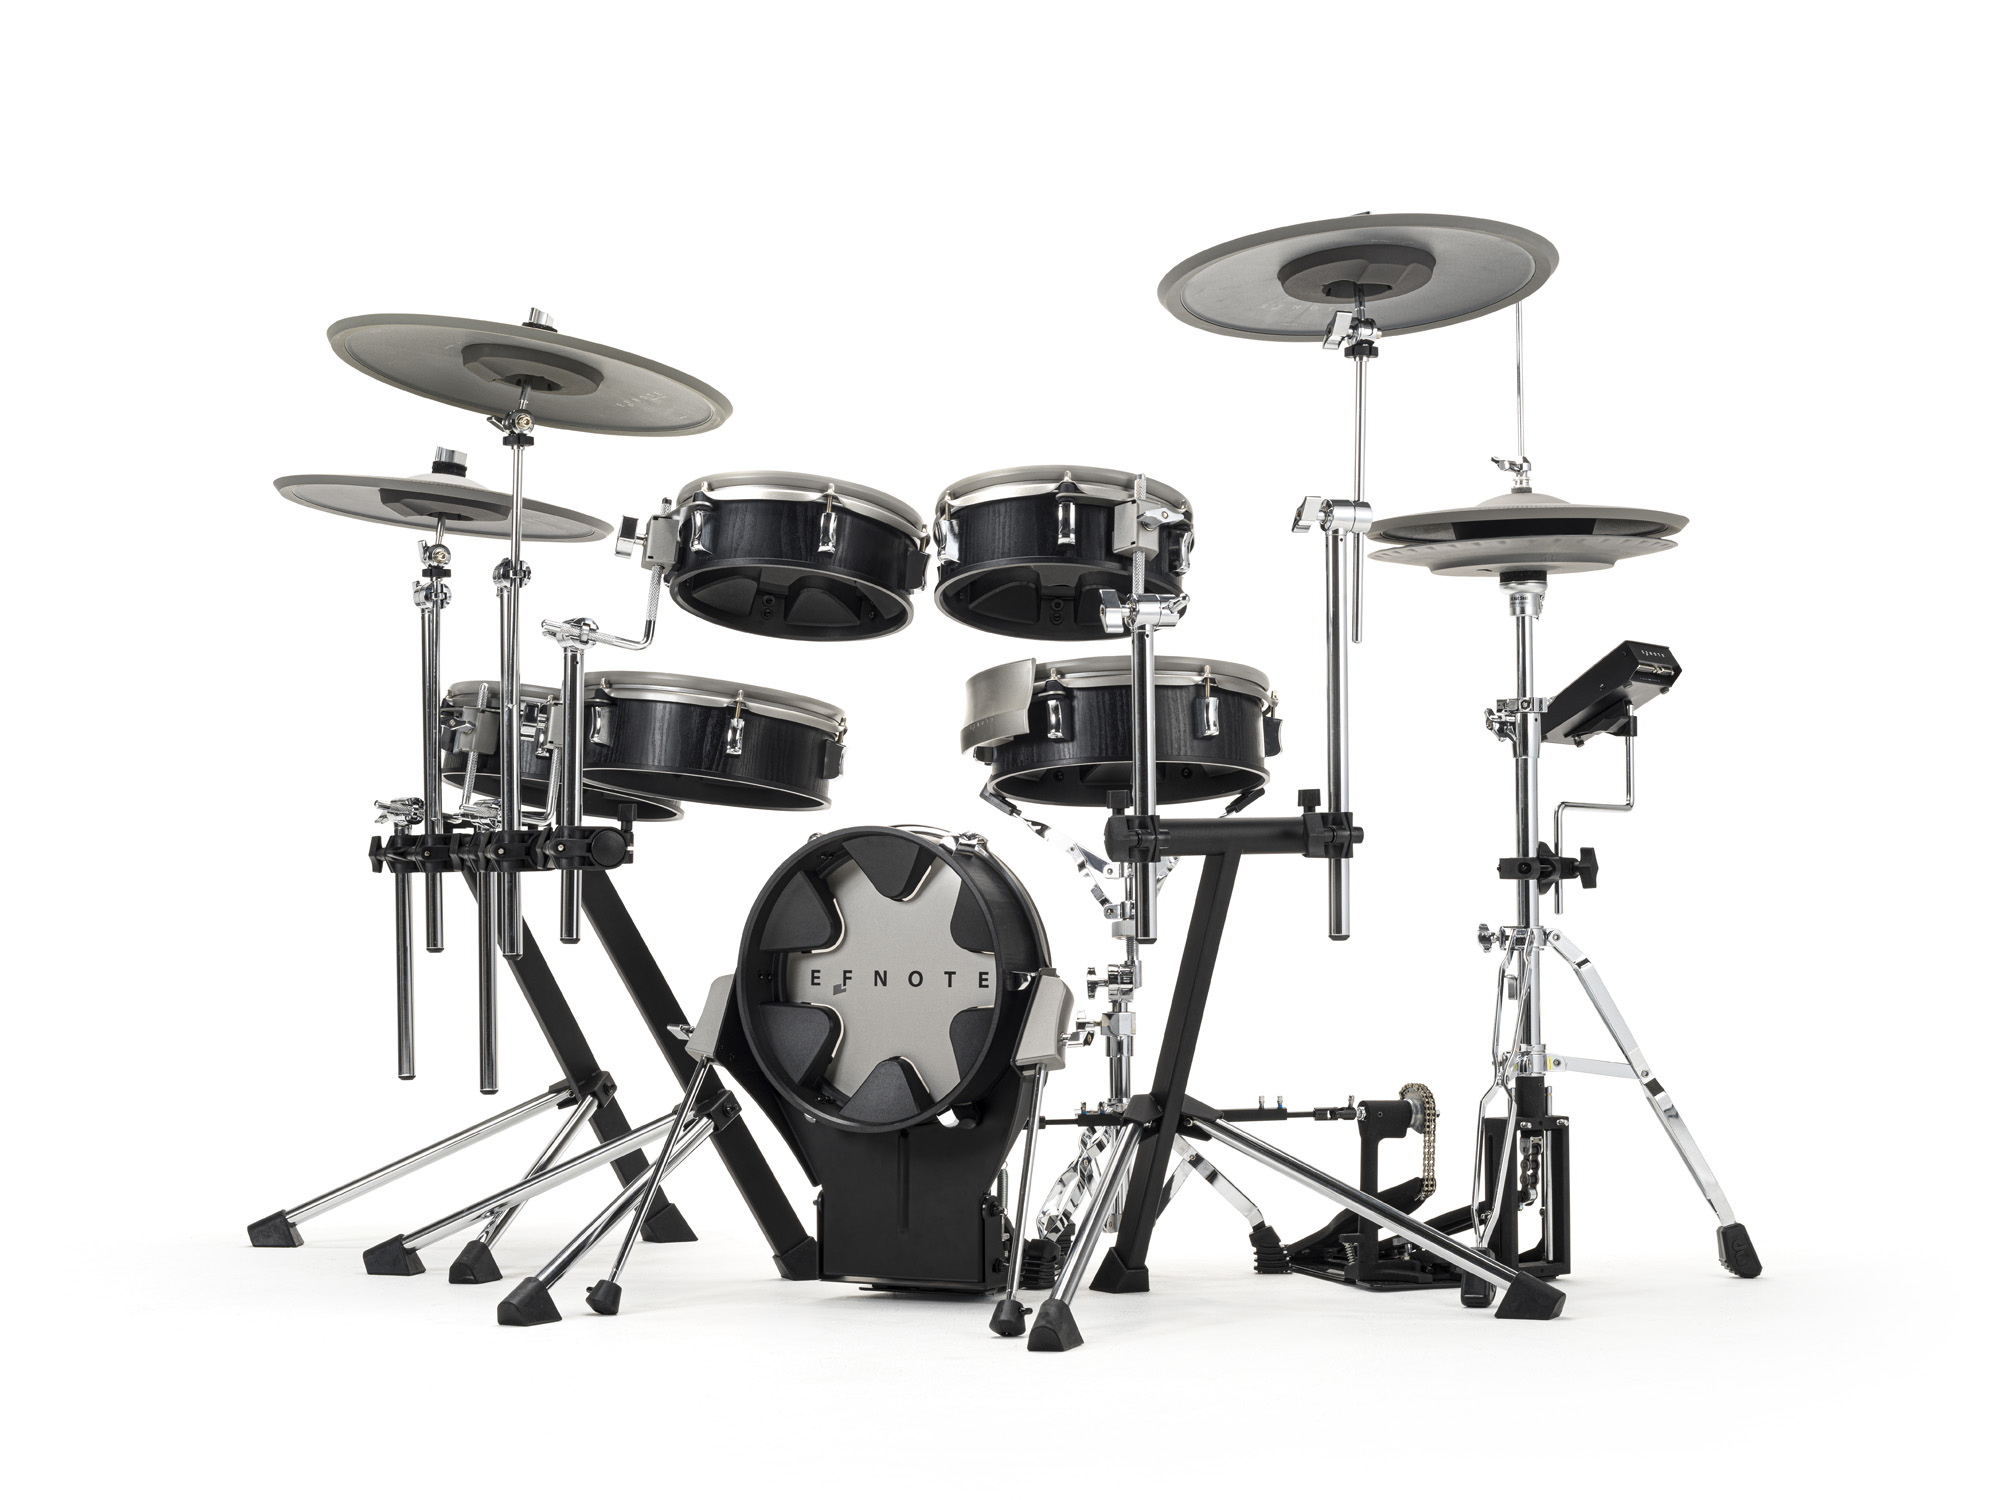 Efnote Efd3x Drum Kit - Elektronisch drumstel - Variation 1